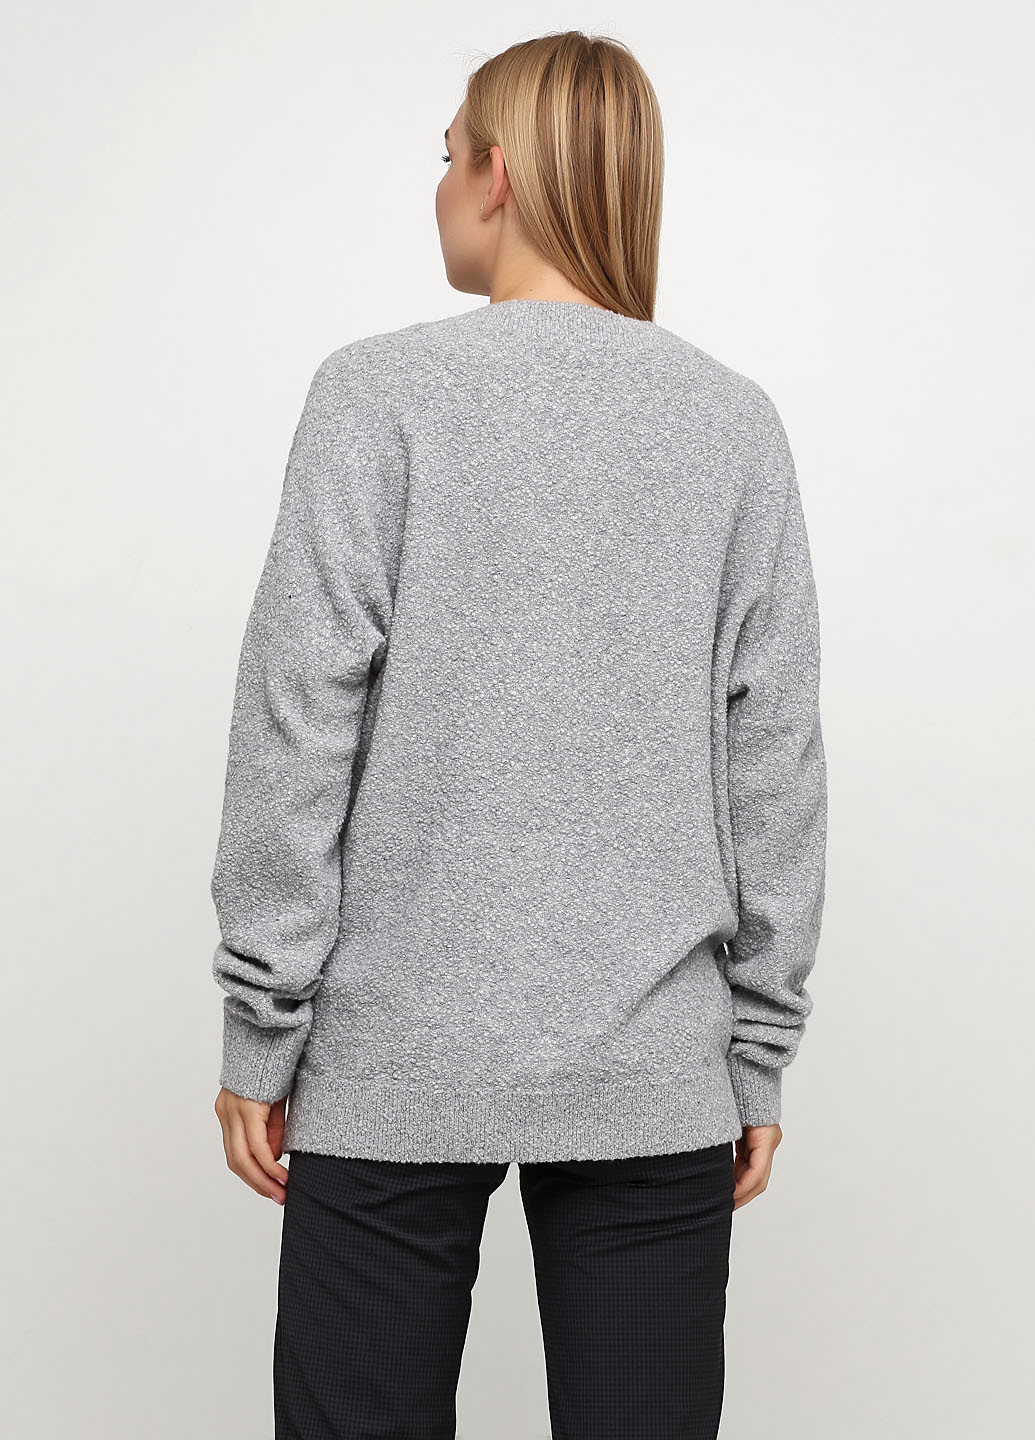 Серый демисезонный пуловер пуловер Cos